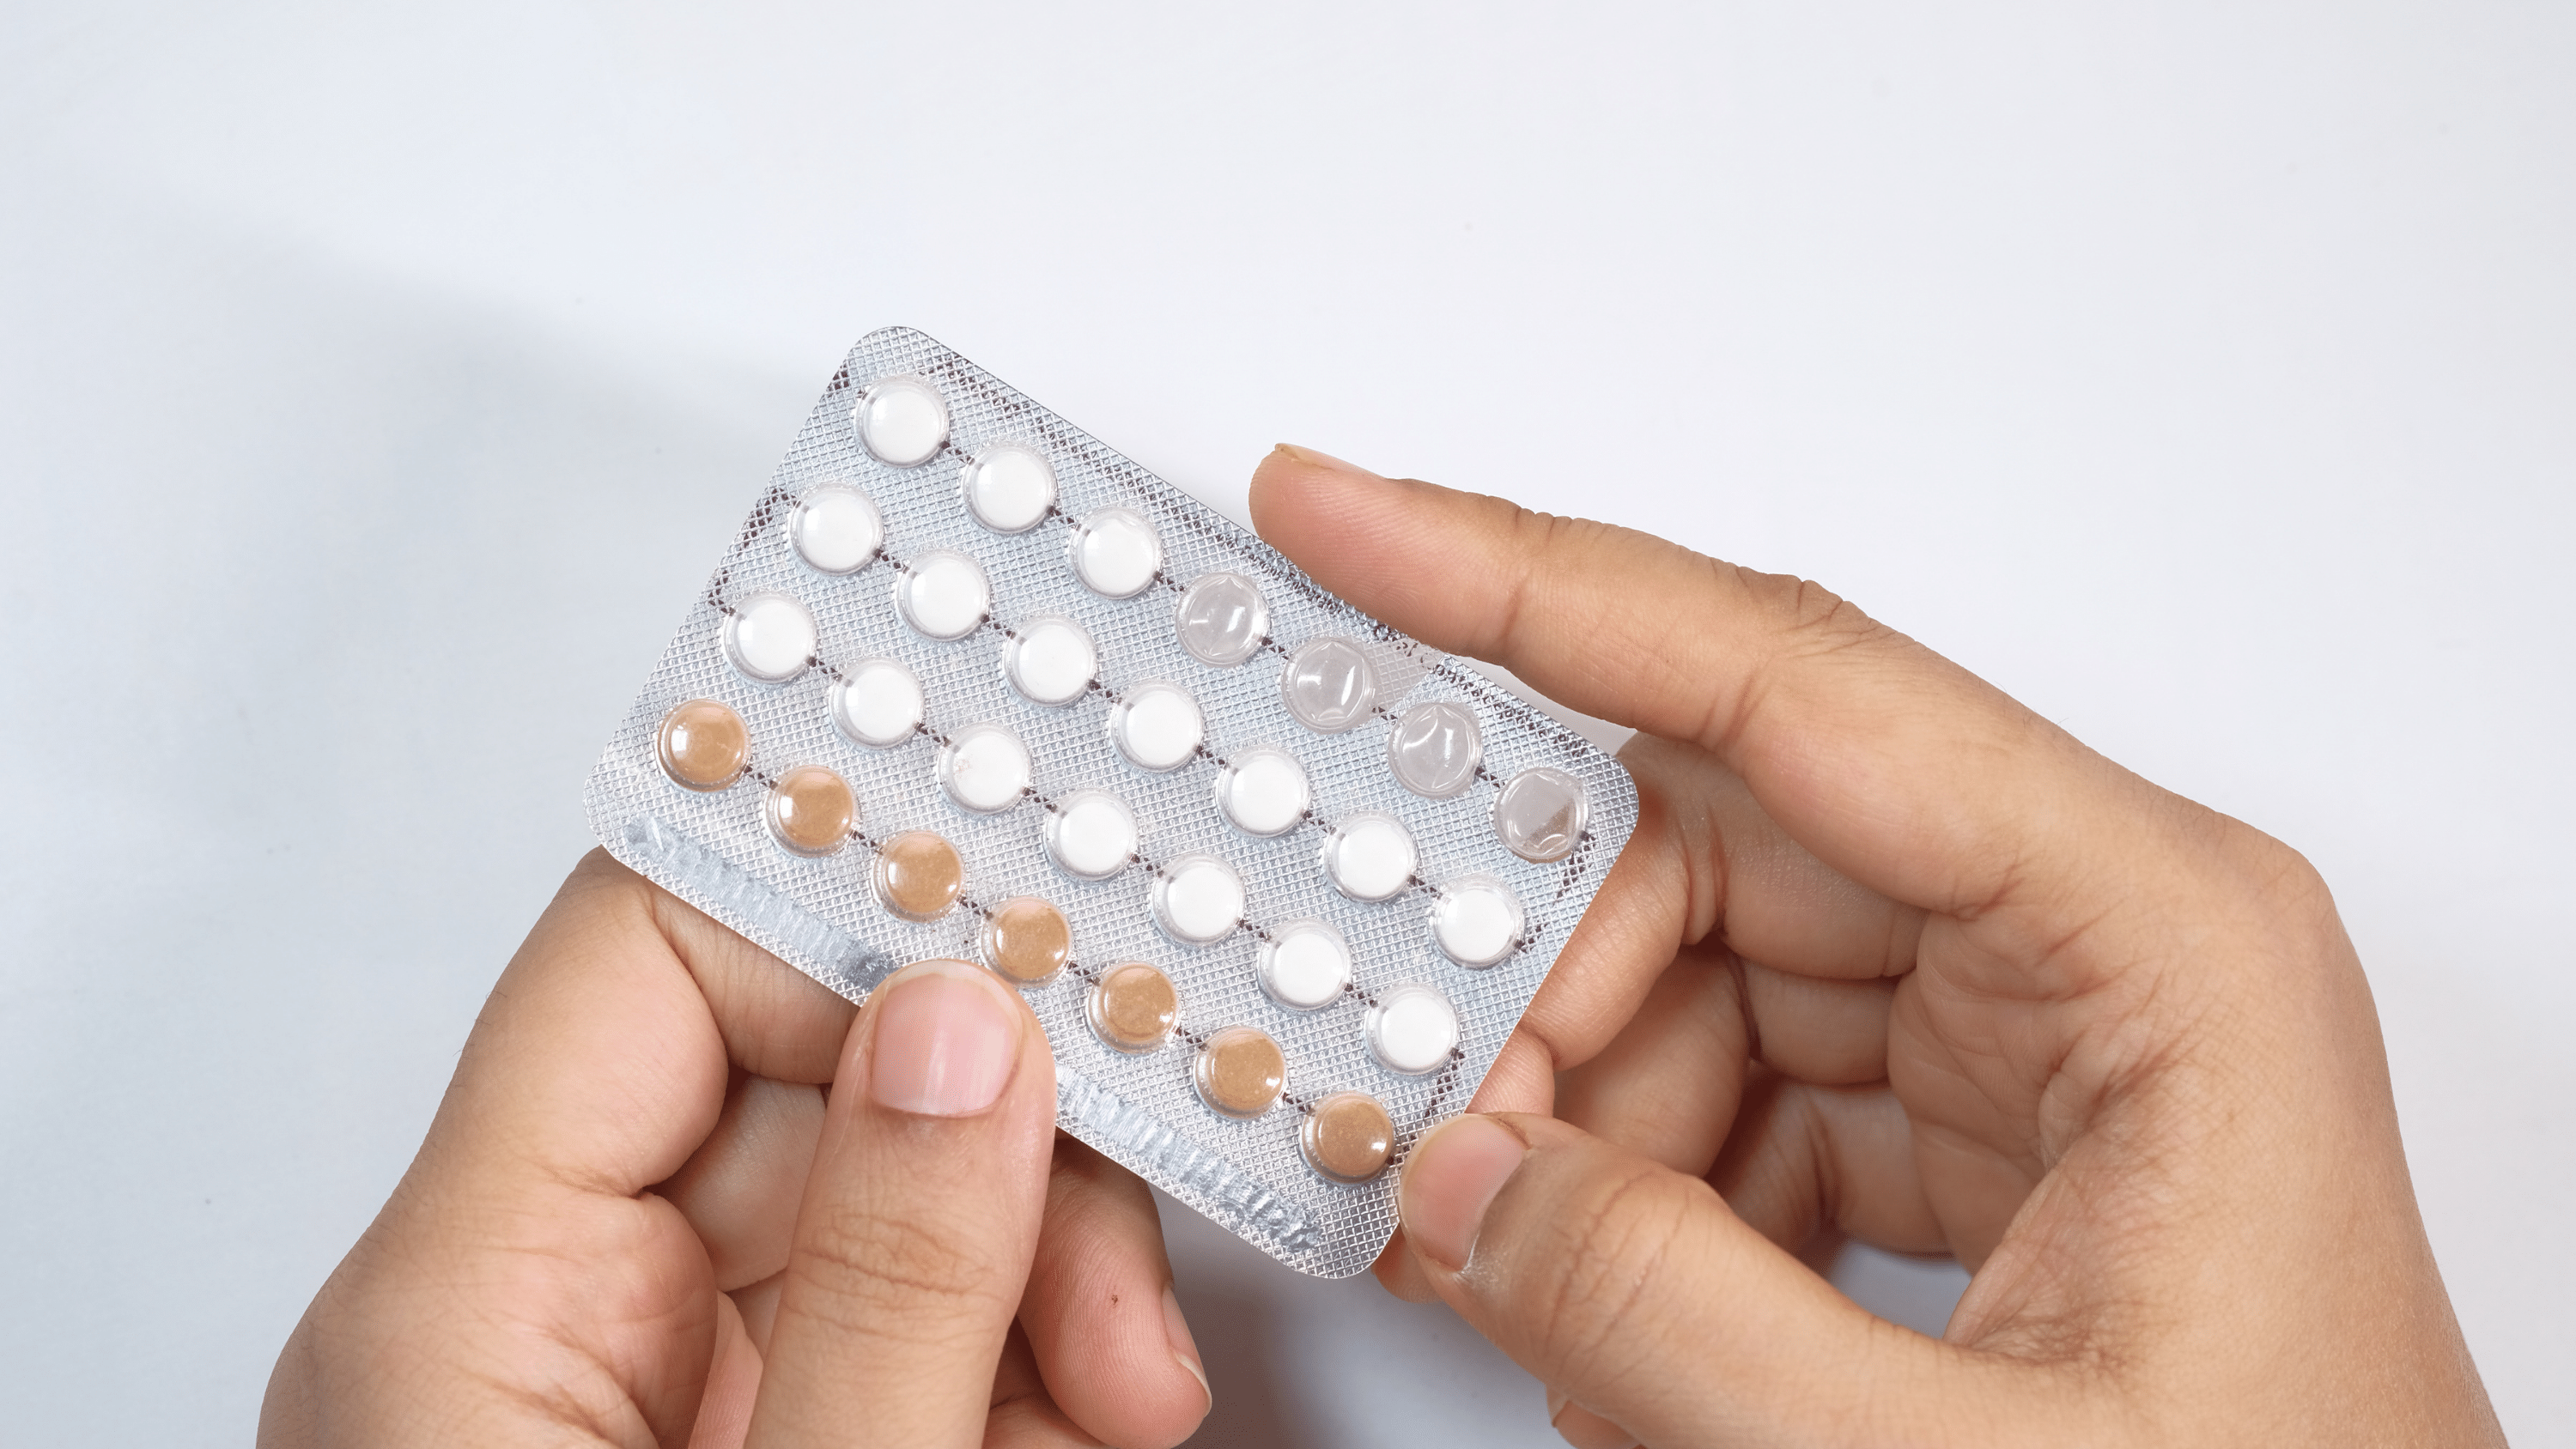 Dostępne dla kobiet formy antykoncepcji